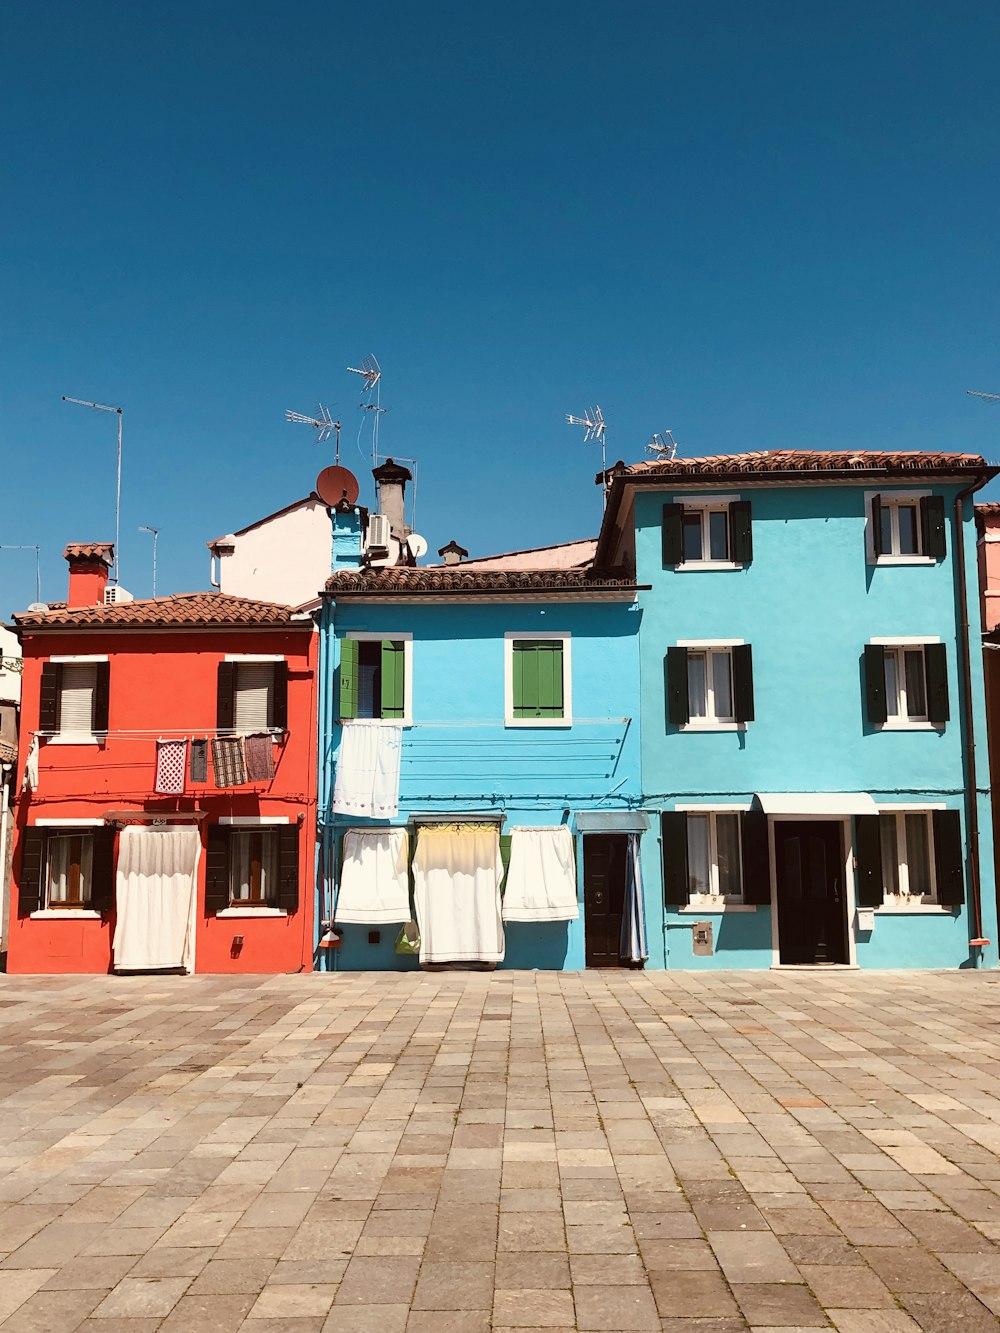 Casas de hormigón azul, blanco y rojo bajo el cielo azul durante el día